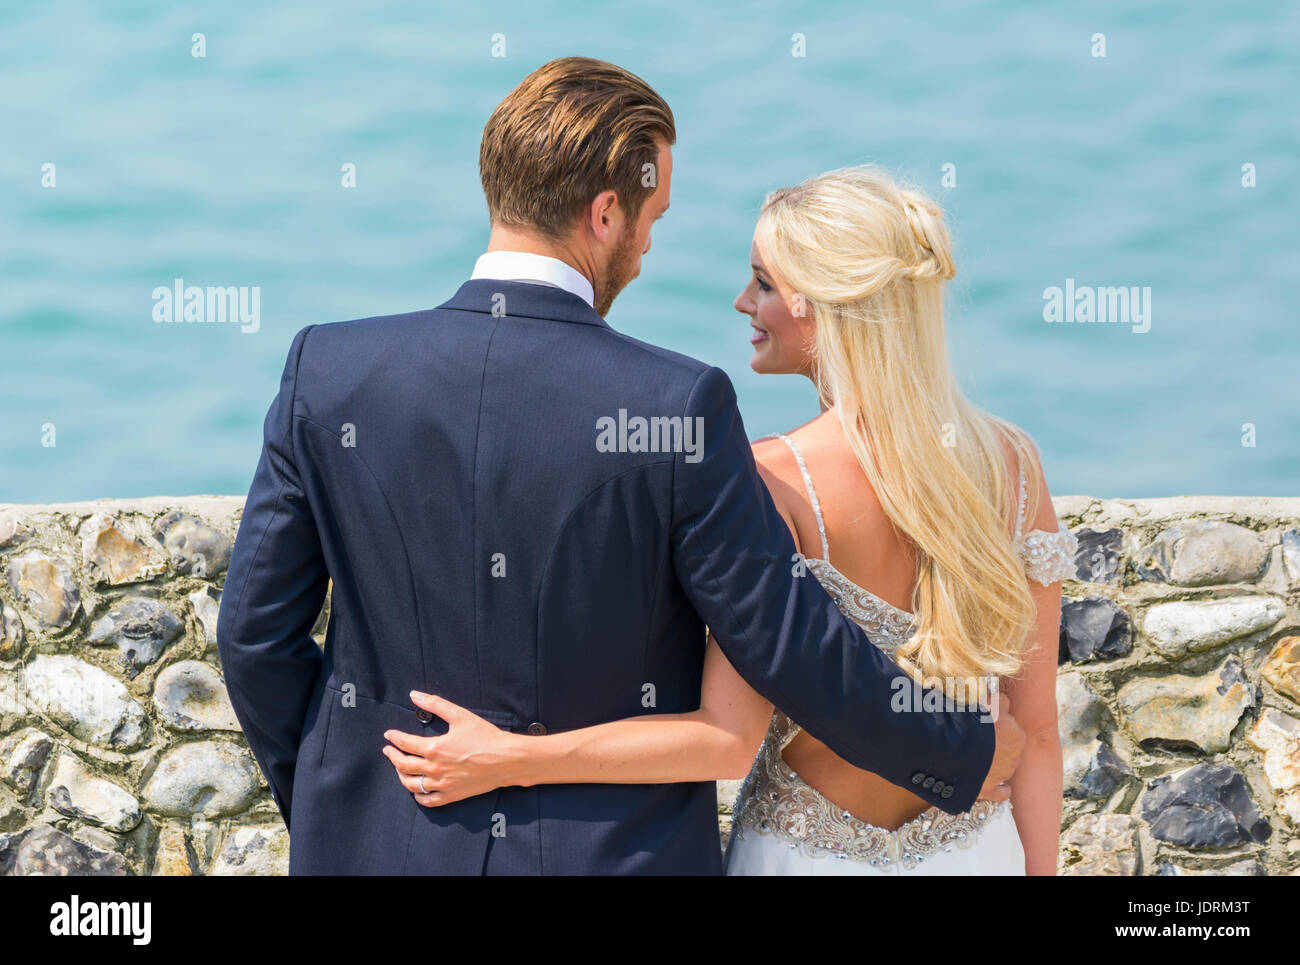 La novia y el novio en una playa con fotos tomadas durante el día de su boda. Pareja casada. Casarse. Día del matrimonio. Foto de stock